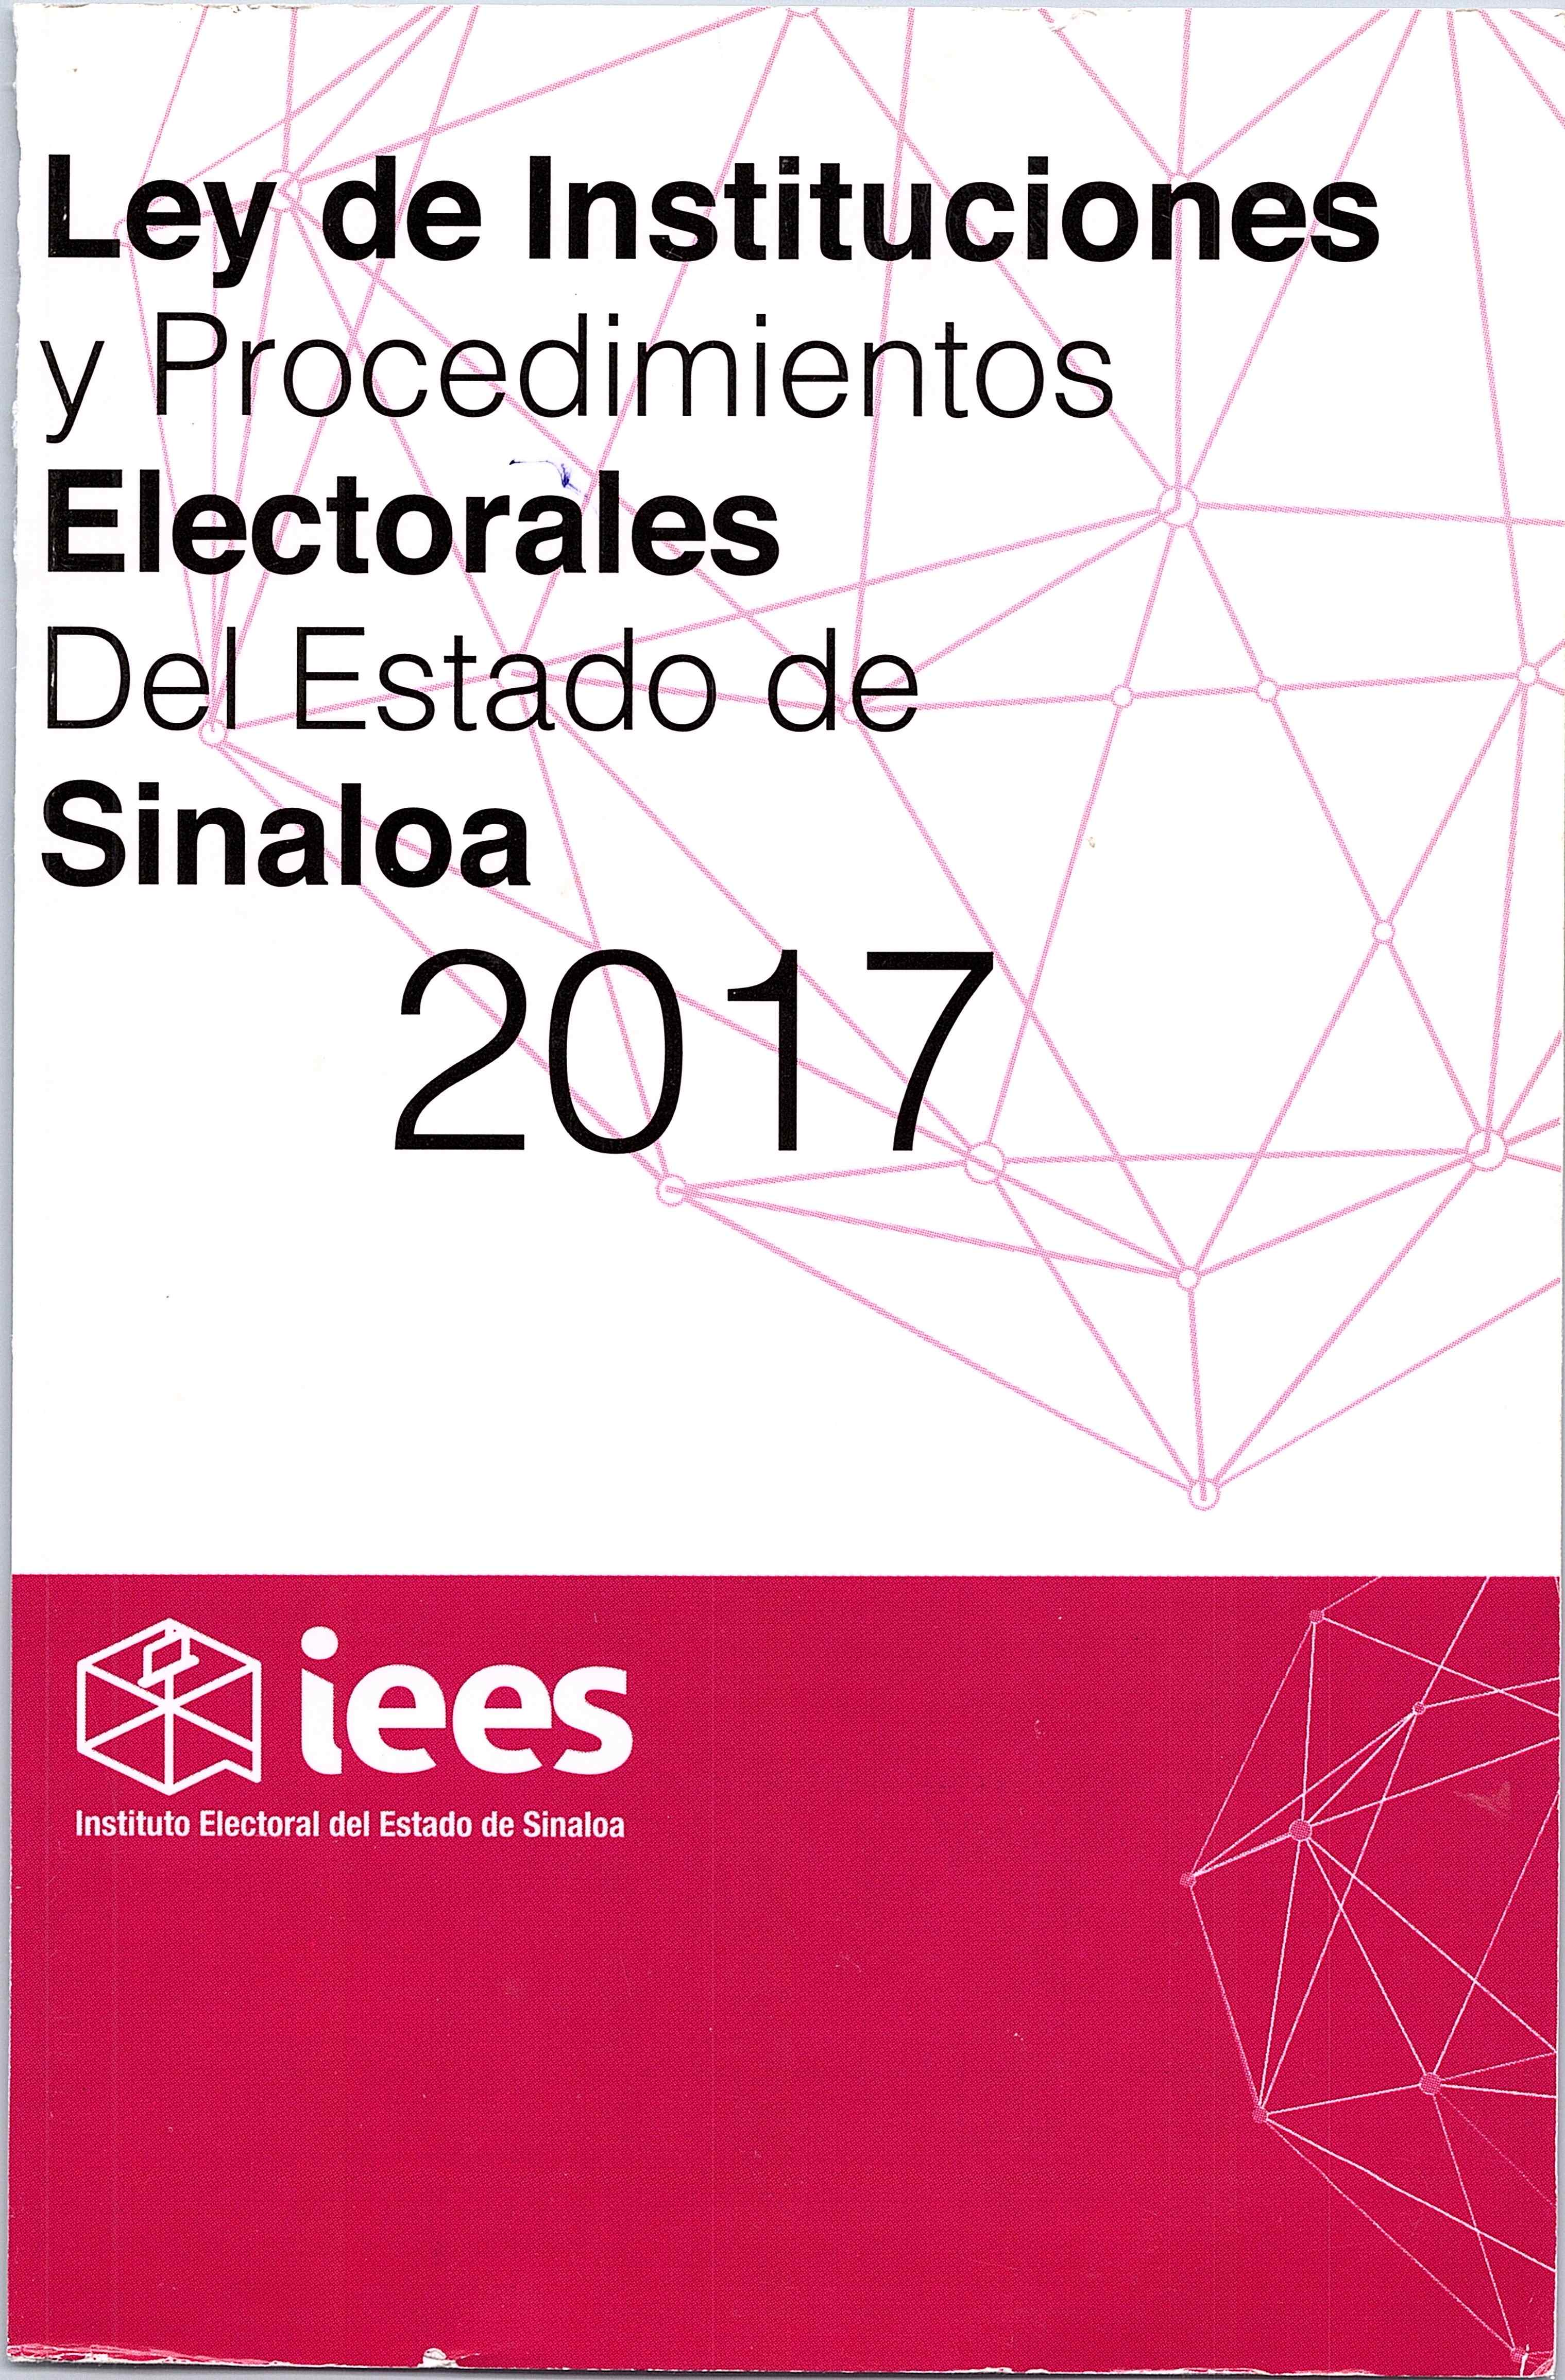 Ley Electoral del Estado de Sinaloa 2017